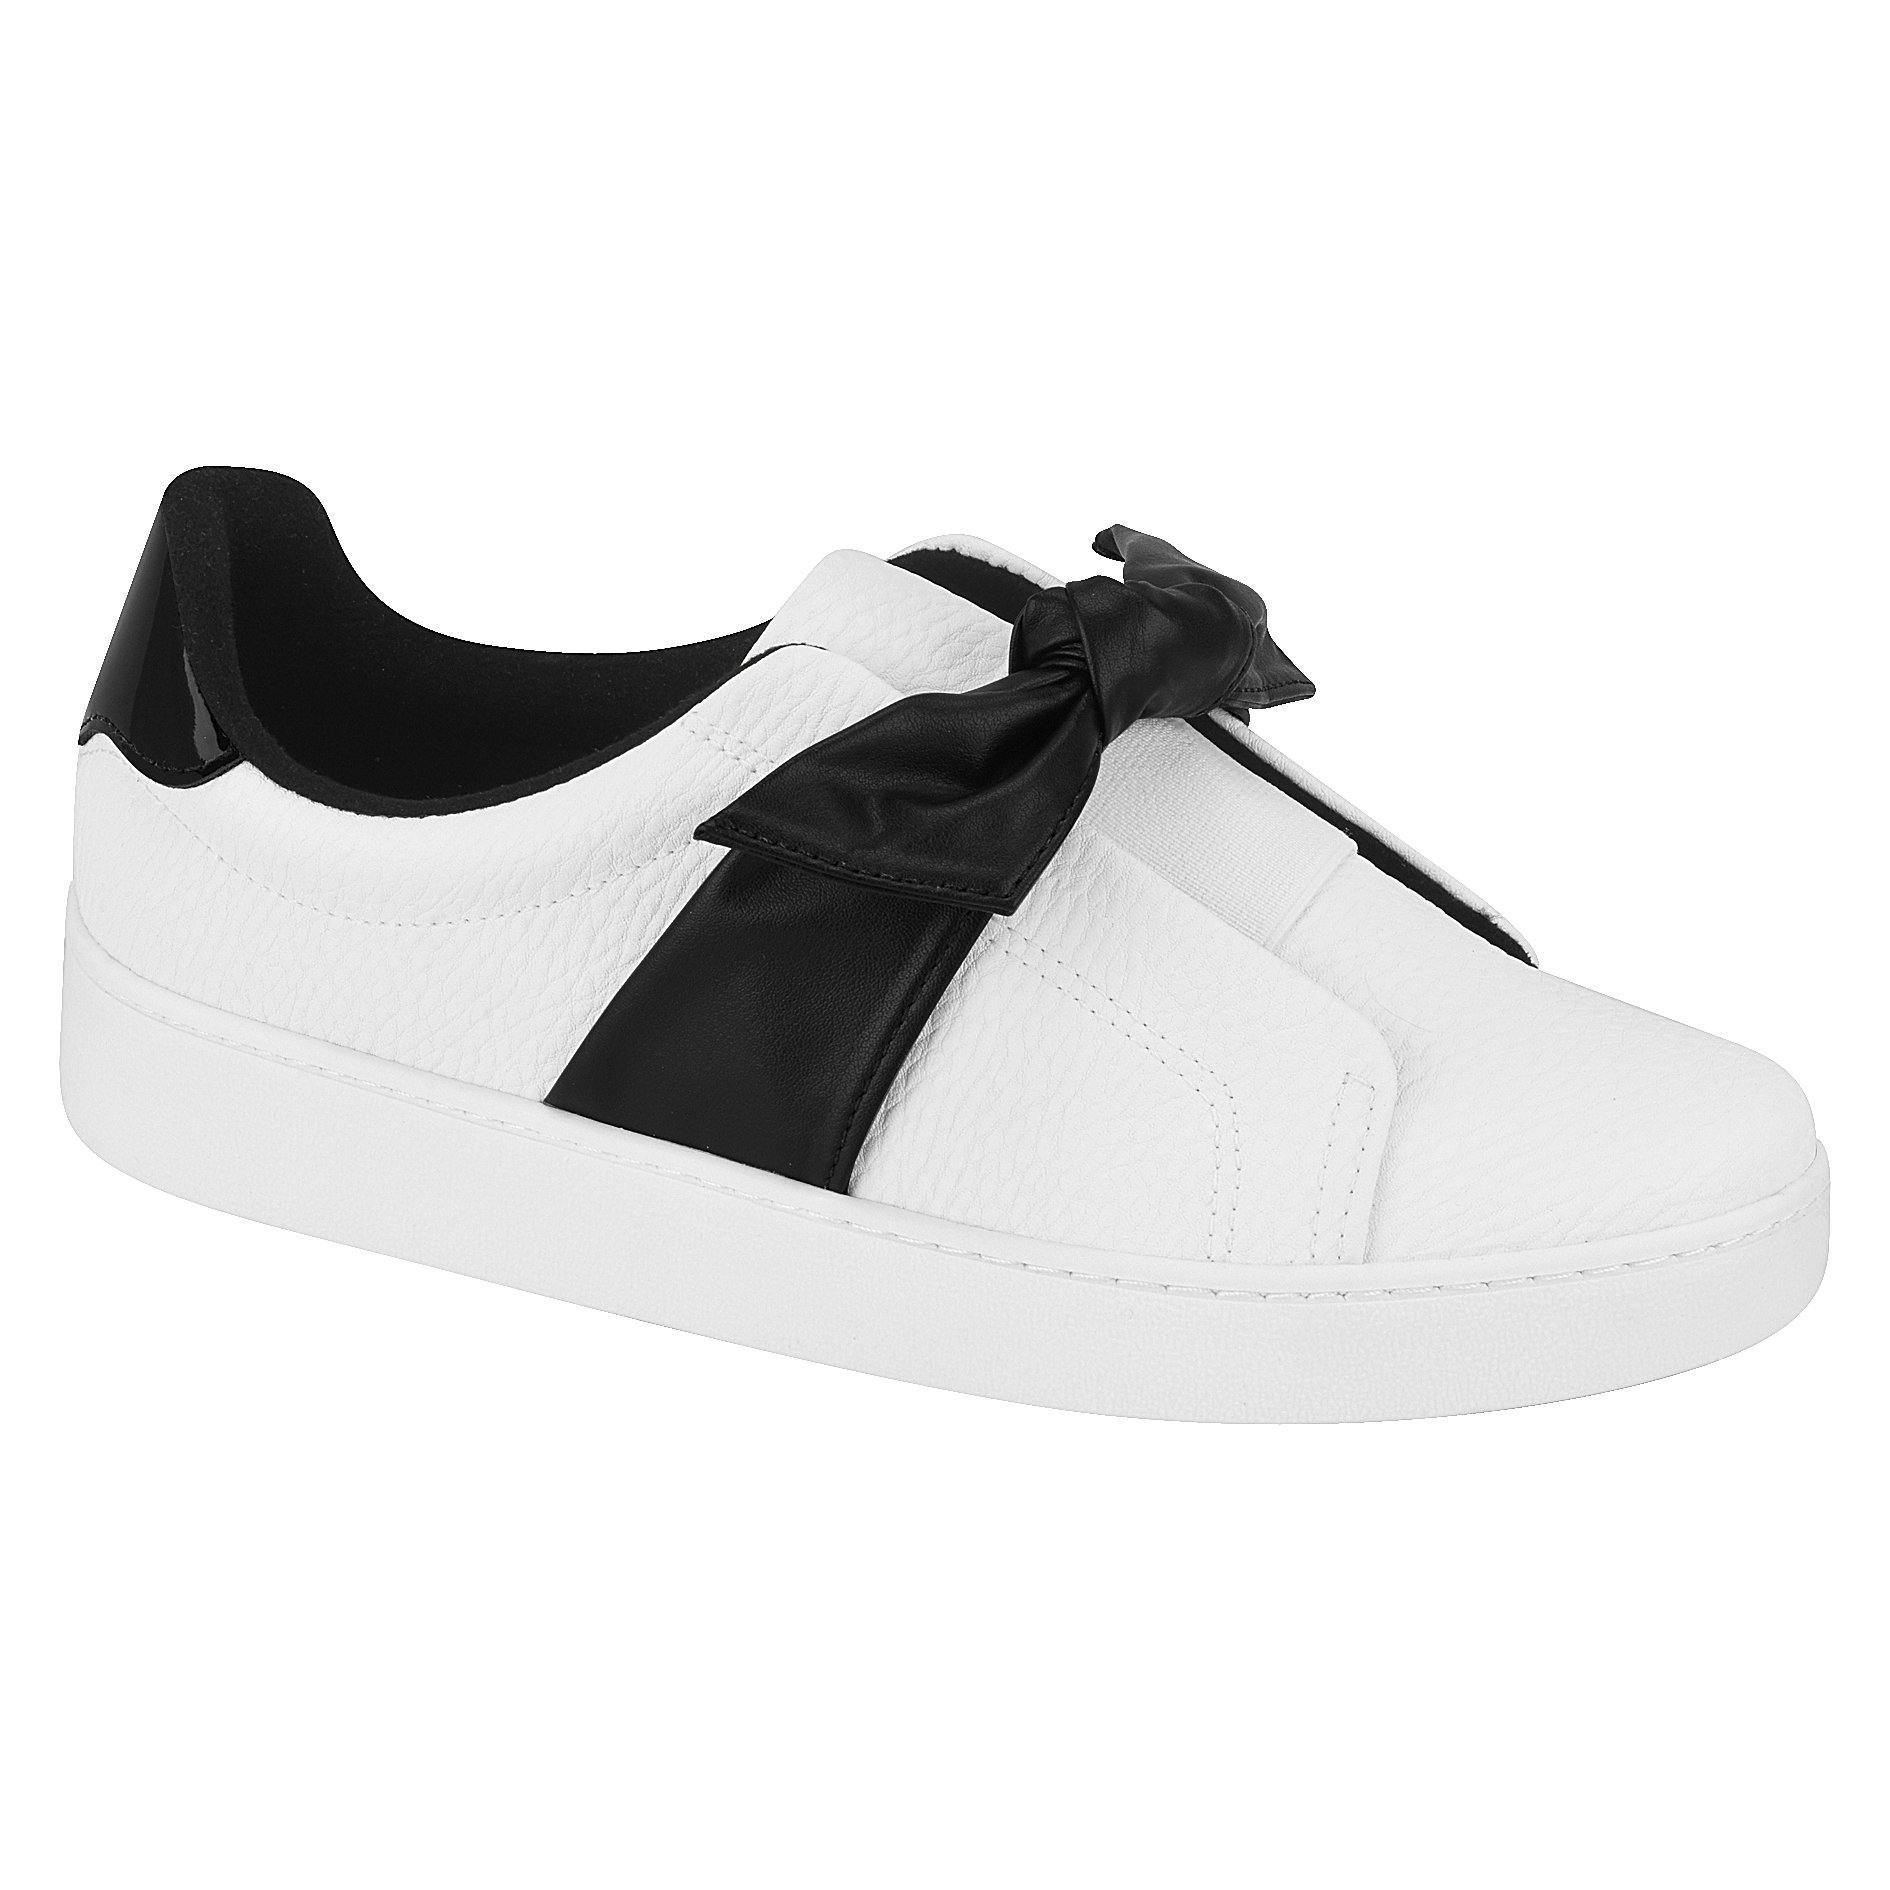 Vizzano 1214-298 Bowtie Sneaker in White/Black Napa - Charley Boutique